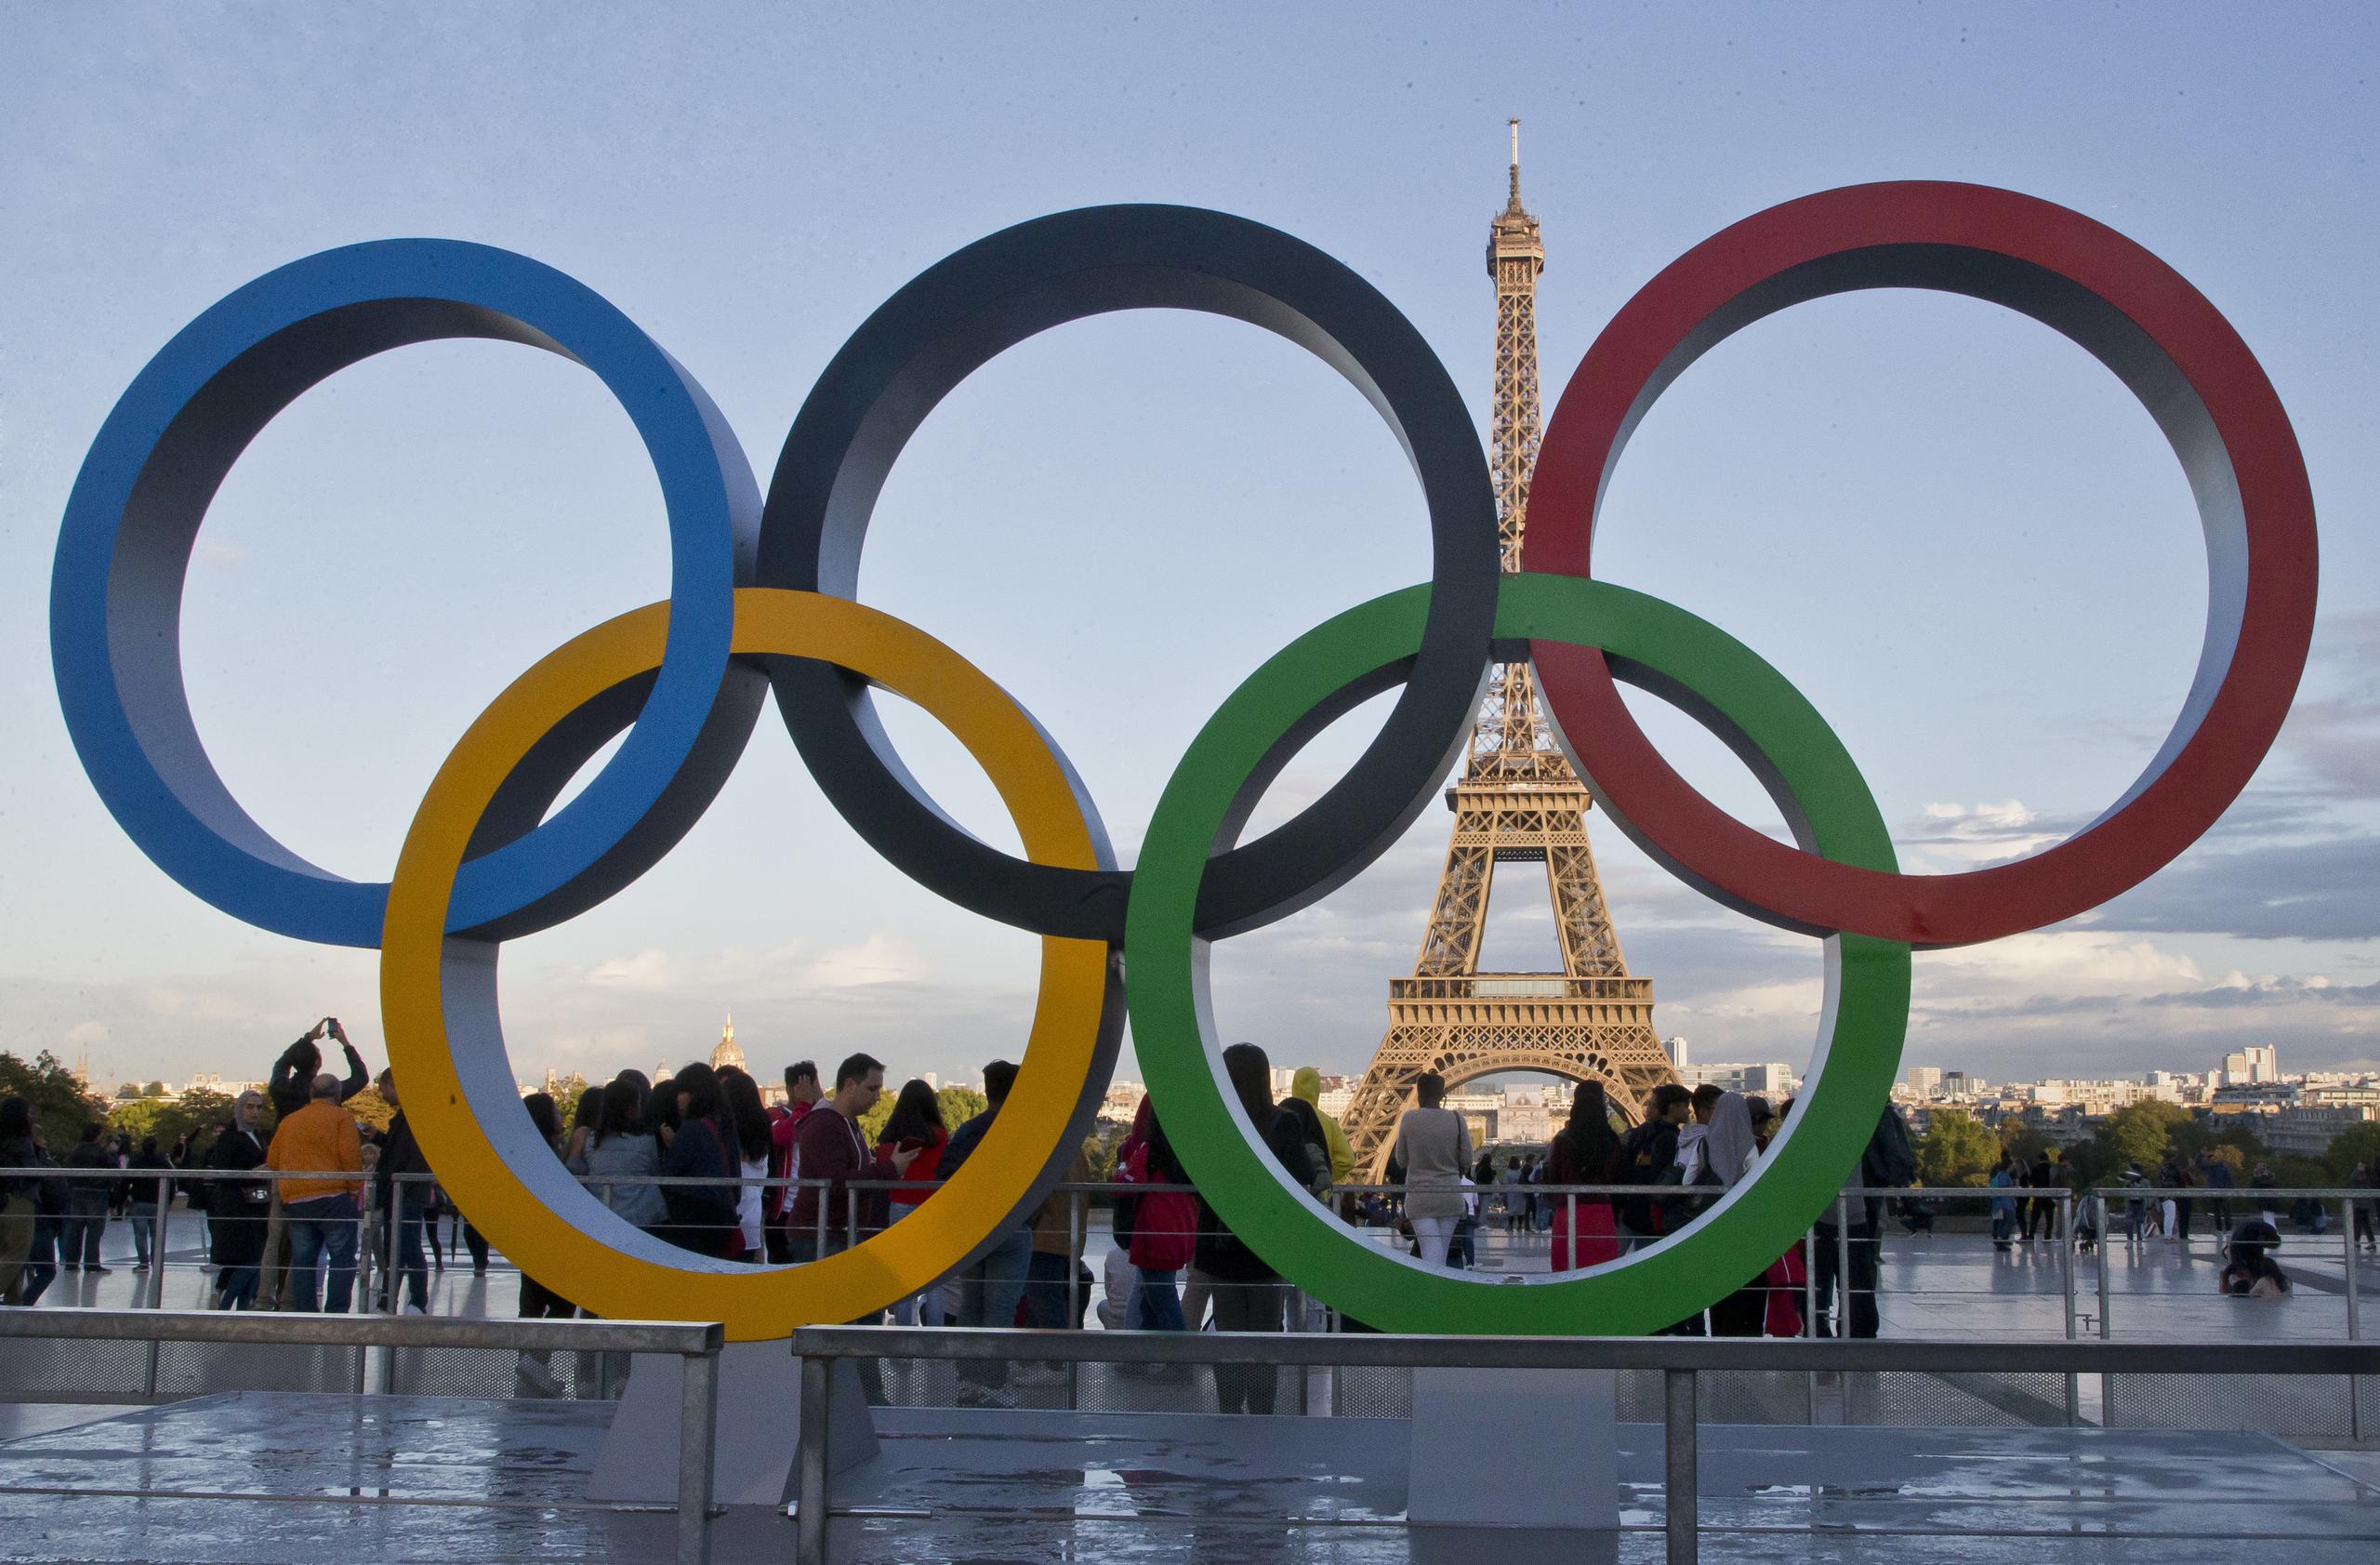 Los aros olímpicos aparecen aquí en la plaza Trocadero, desde donde se puede observar la icónica Torre Eiffel en París.